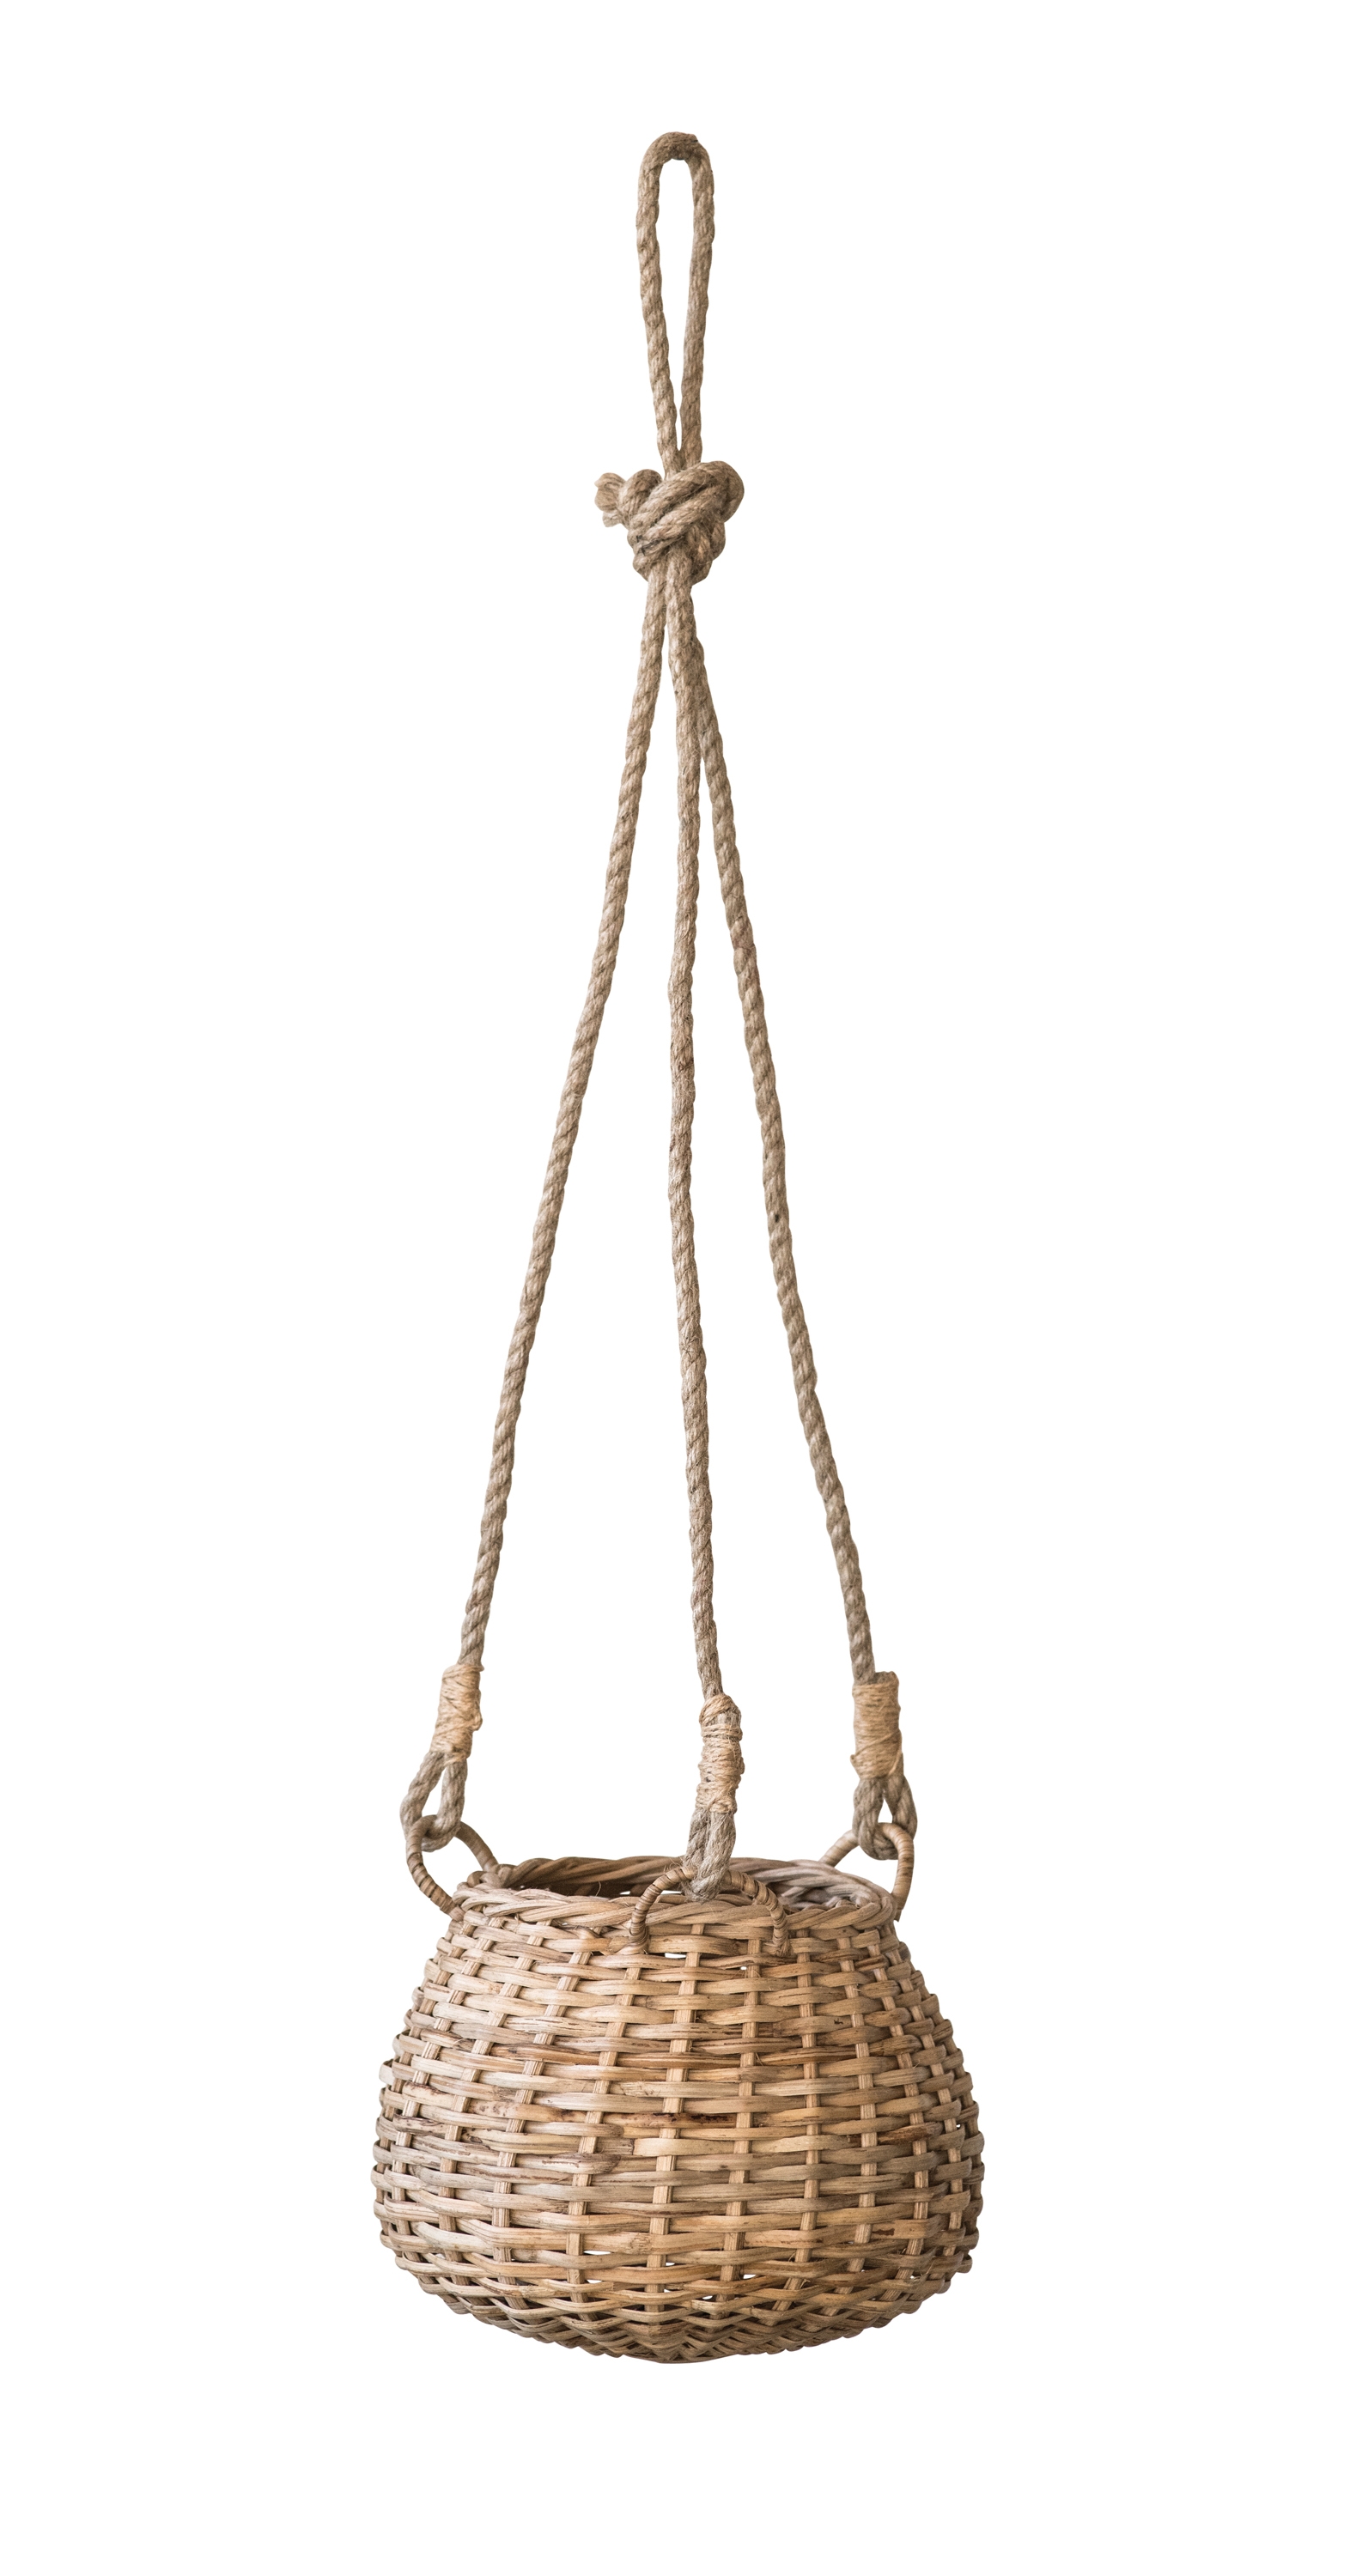 Hanging Rattan Basket - Image 0